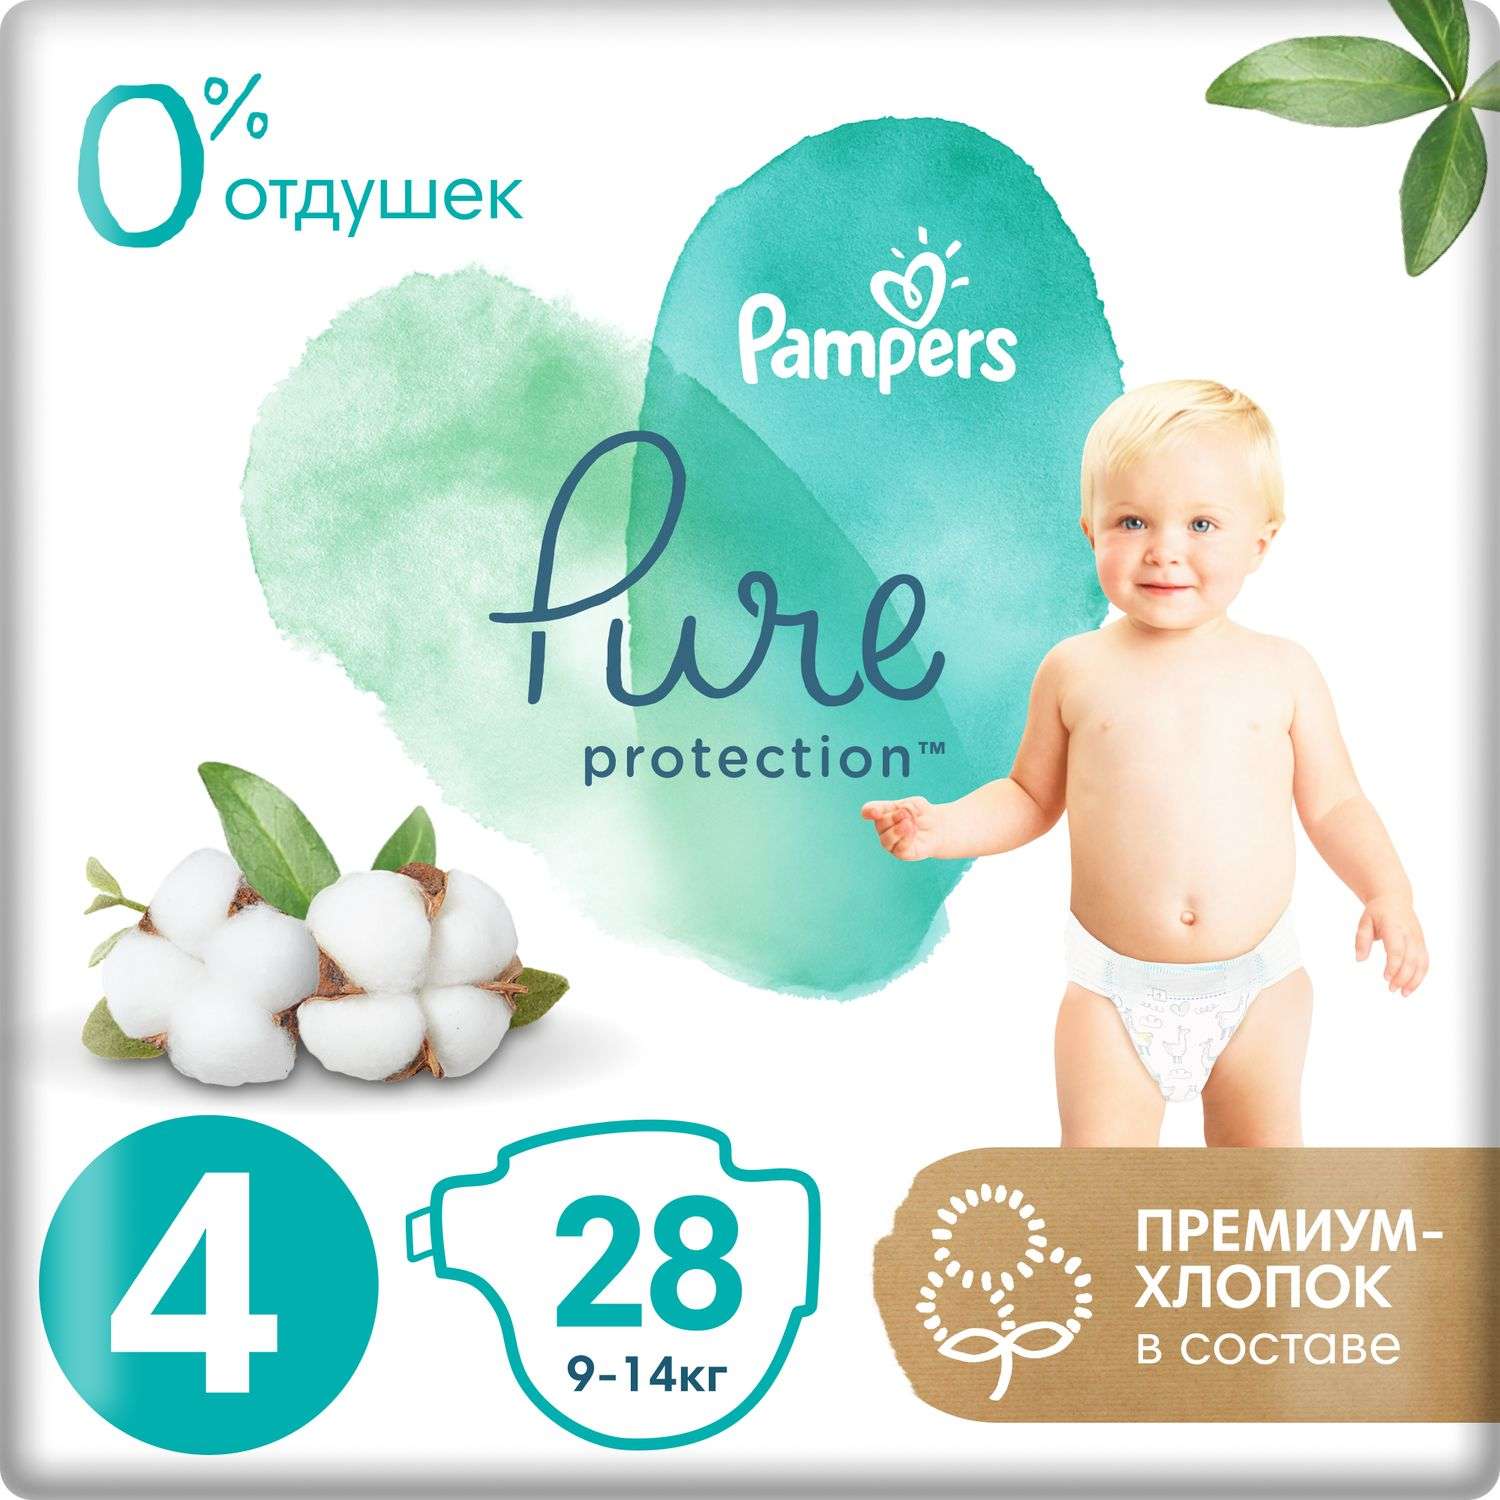 Подгузники Pampers Pure Protection 9-14кг 28шт - фото 1